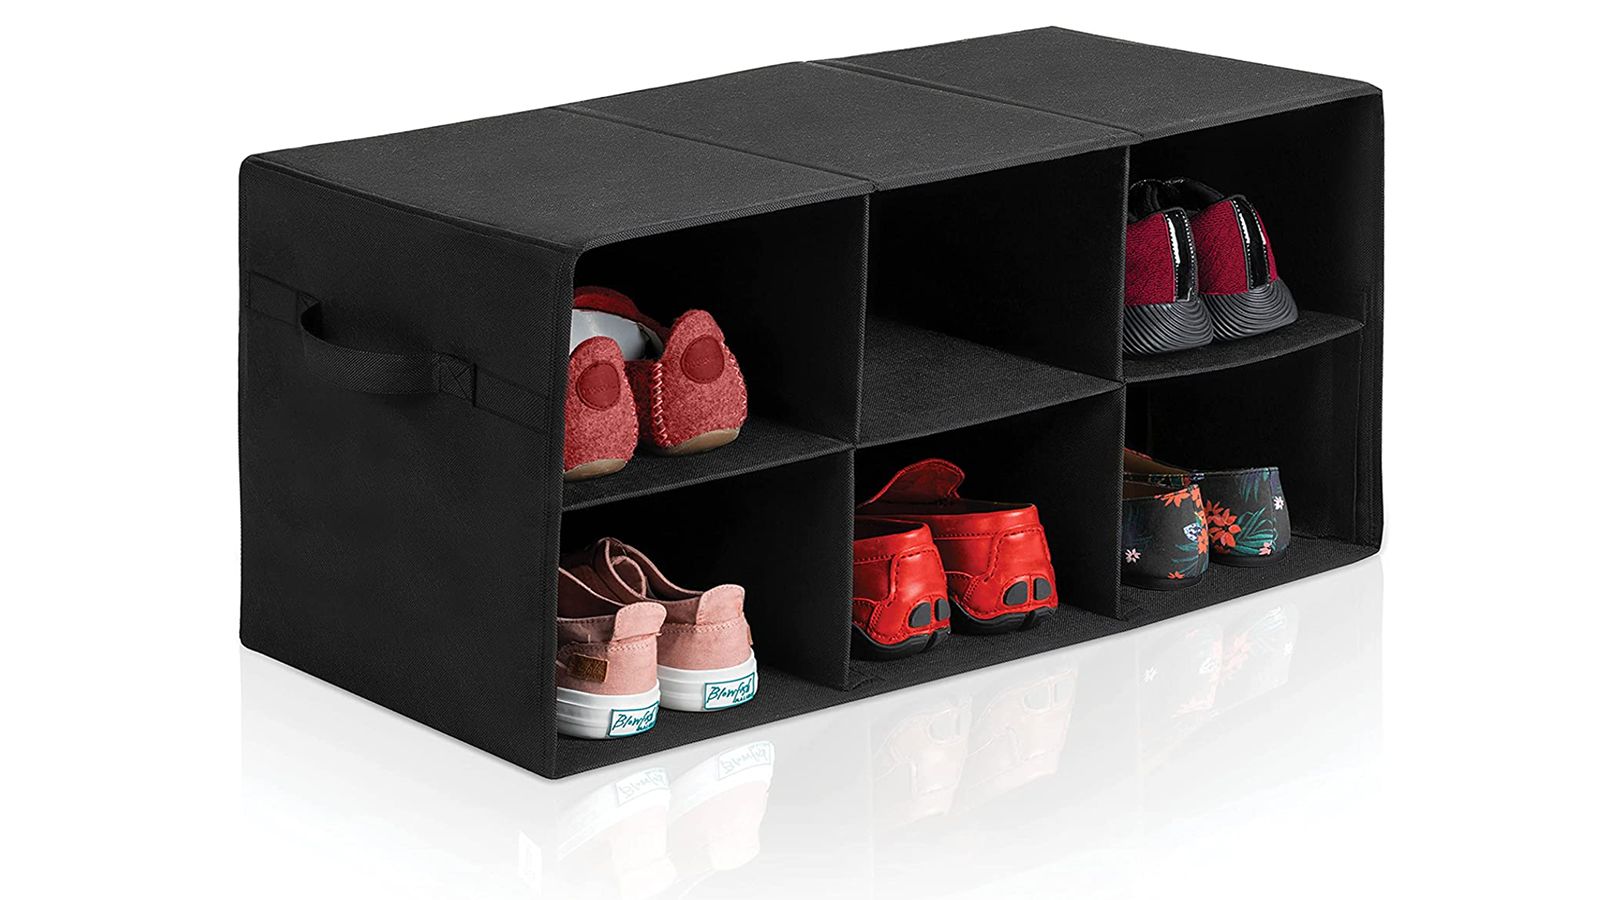 Designer Shoe Shelves on a Budget